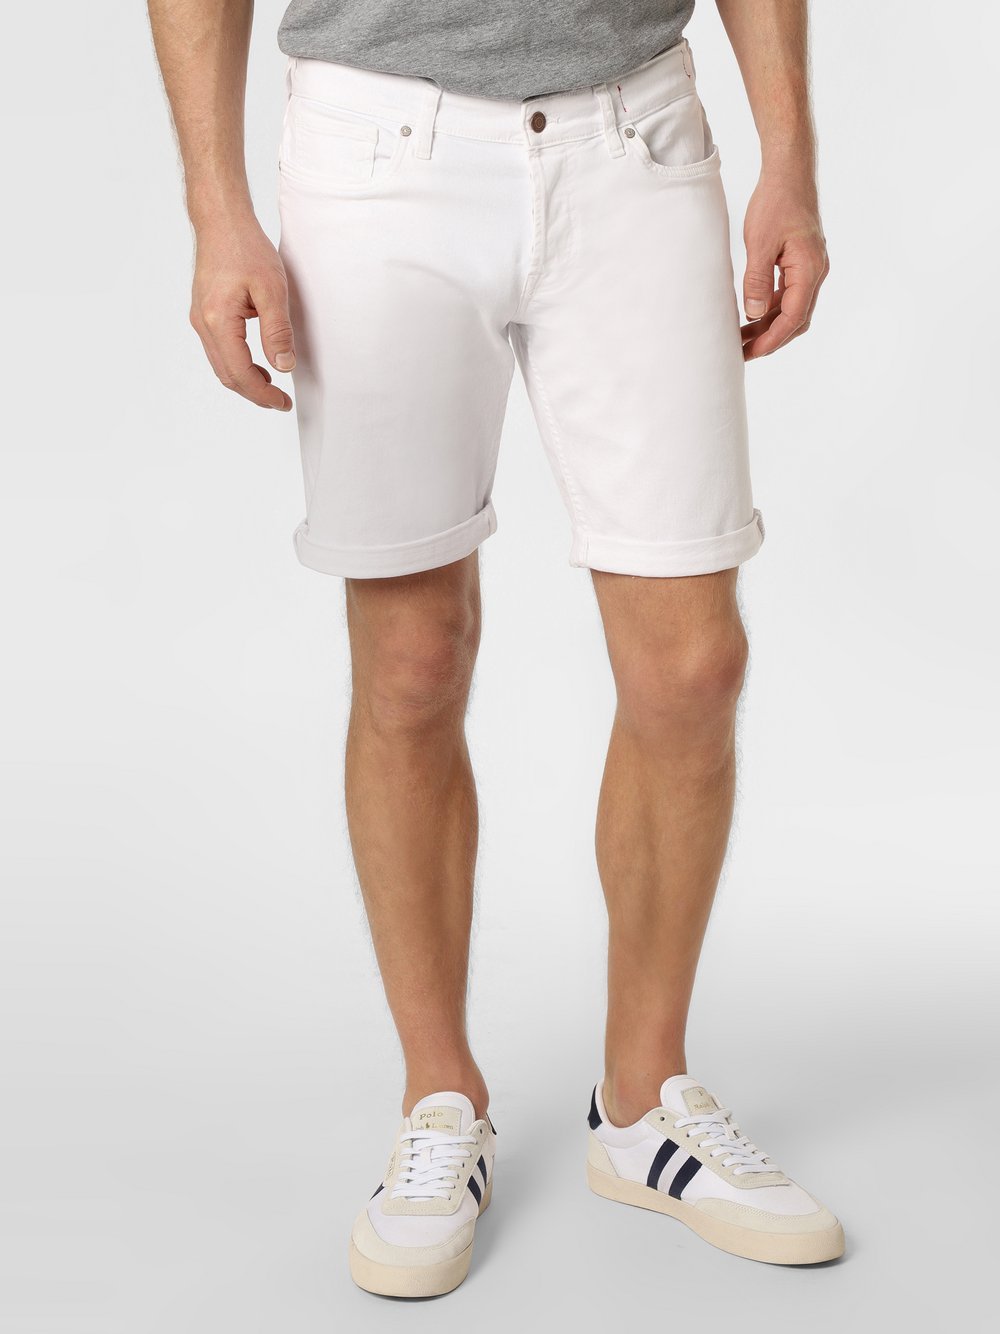 GUESS - Męskie spodenki jeansowe, biały